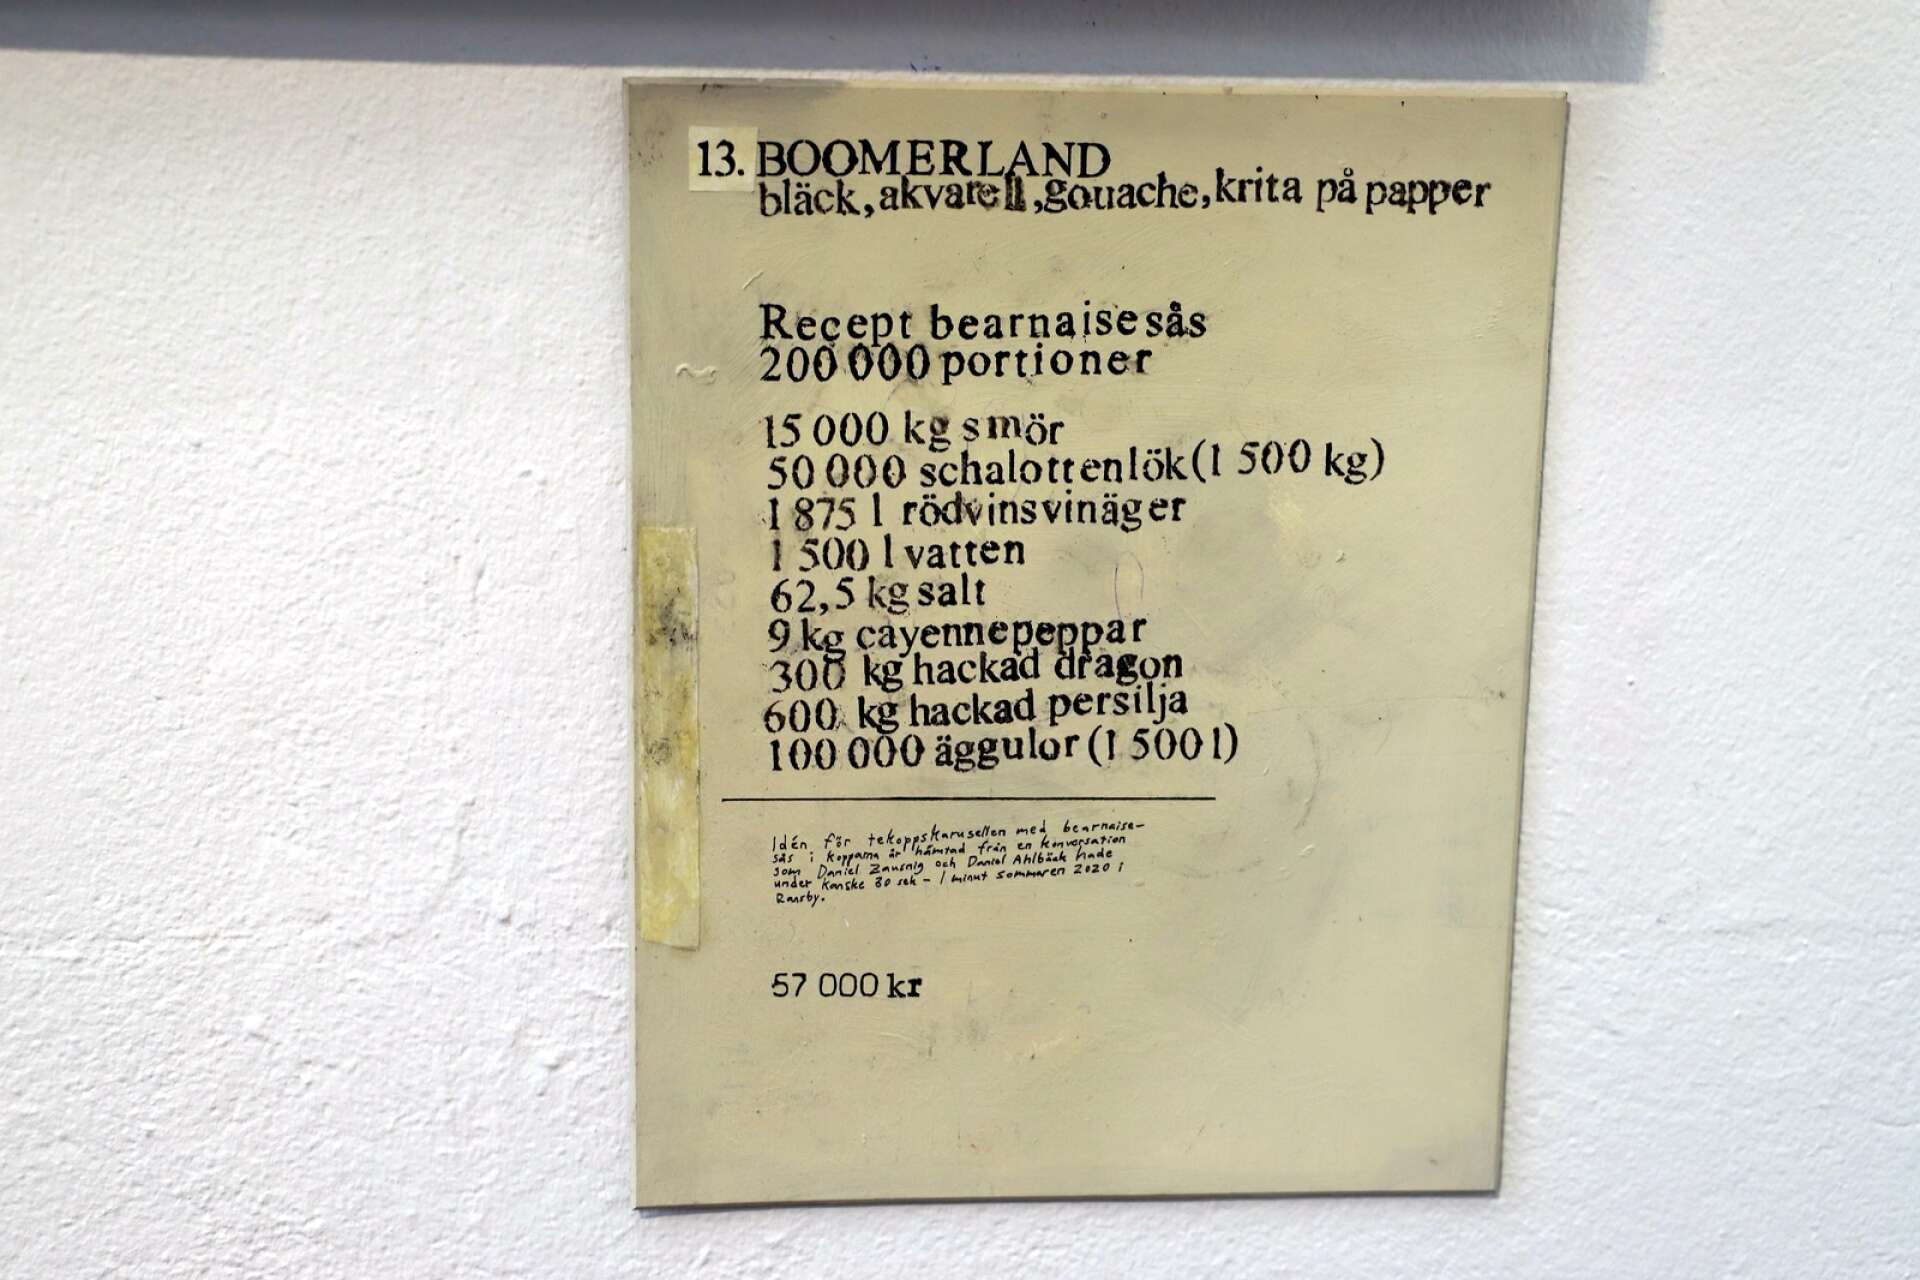 Målningen Boomerland åtföljs av ett recept på en rejäl omgång bearnaisesås.